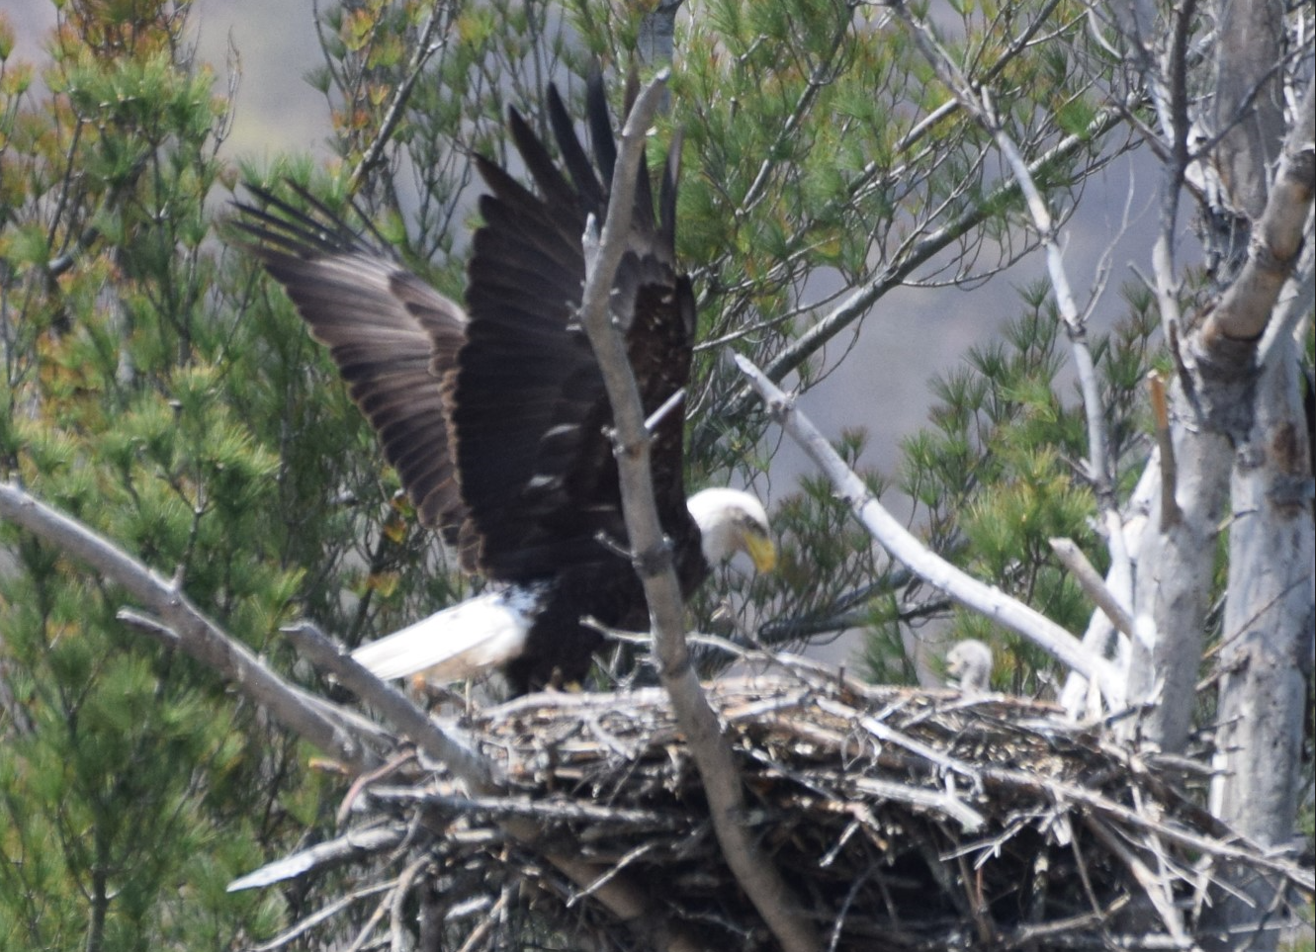 Eagles Nest across from dock